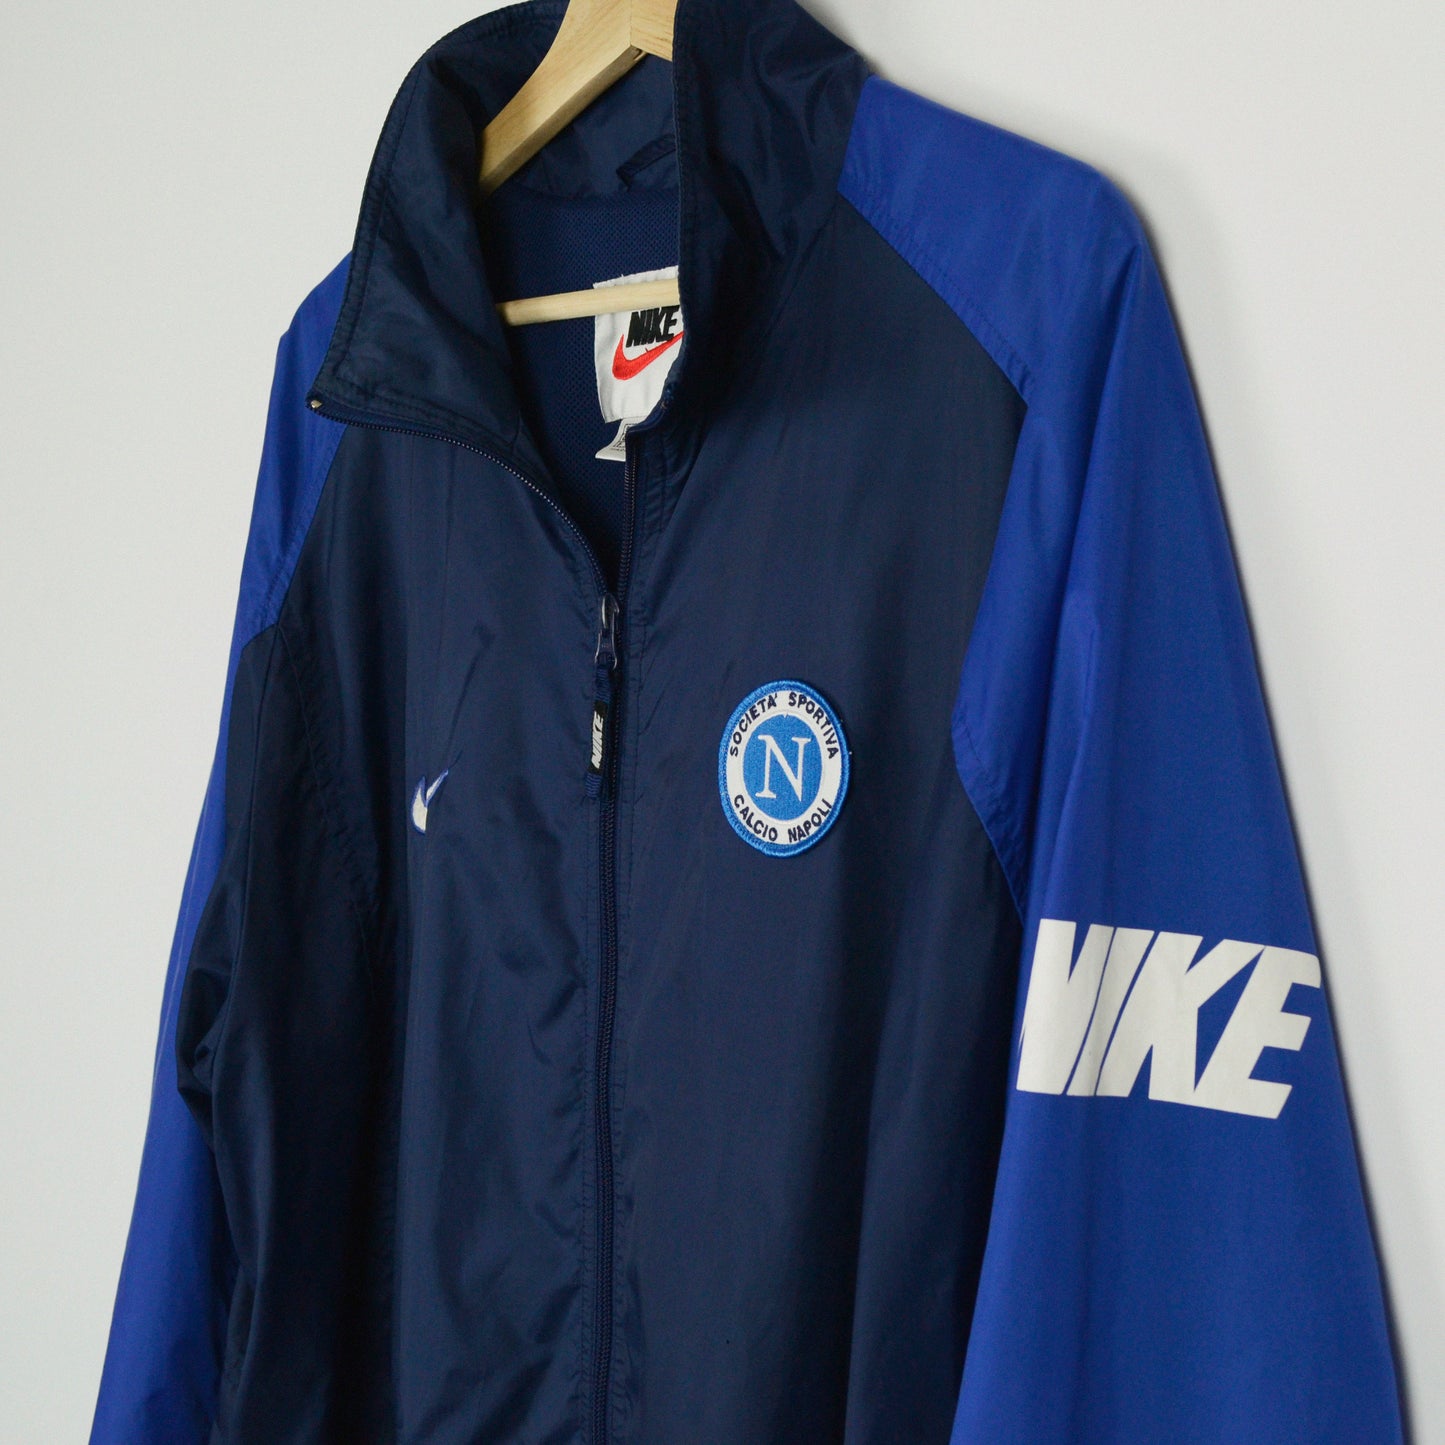 1997-98 Nike Napoli Training Jacket XL